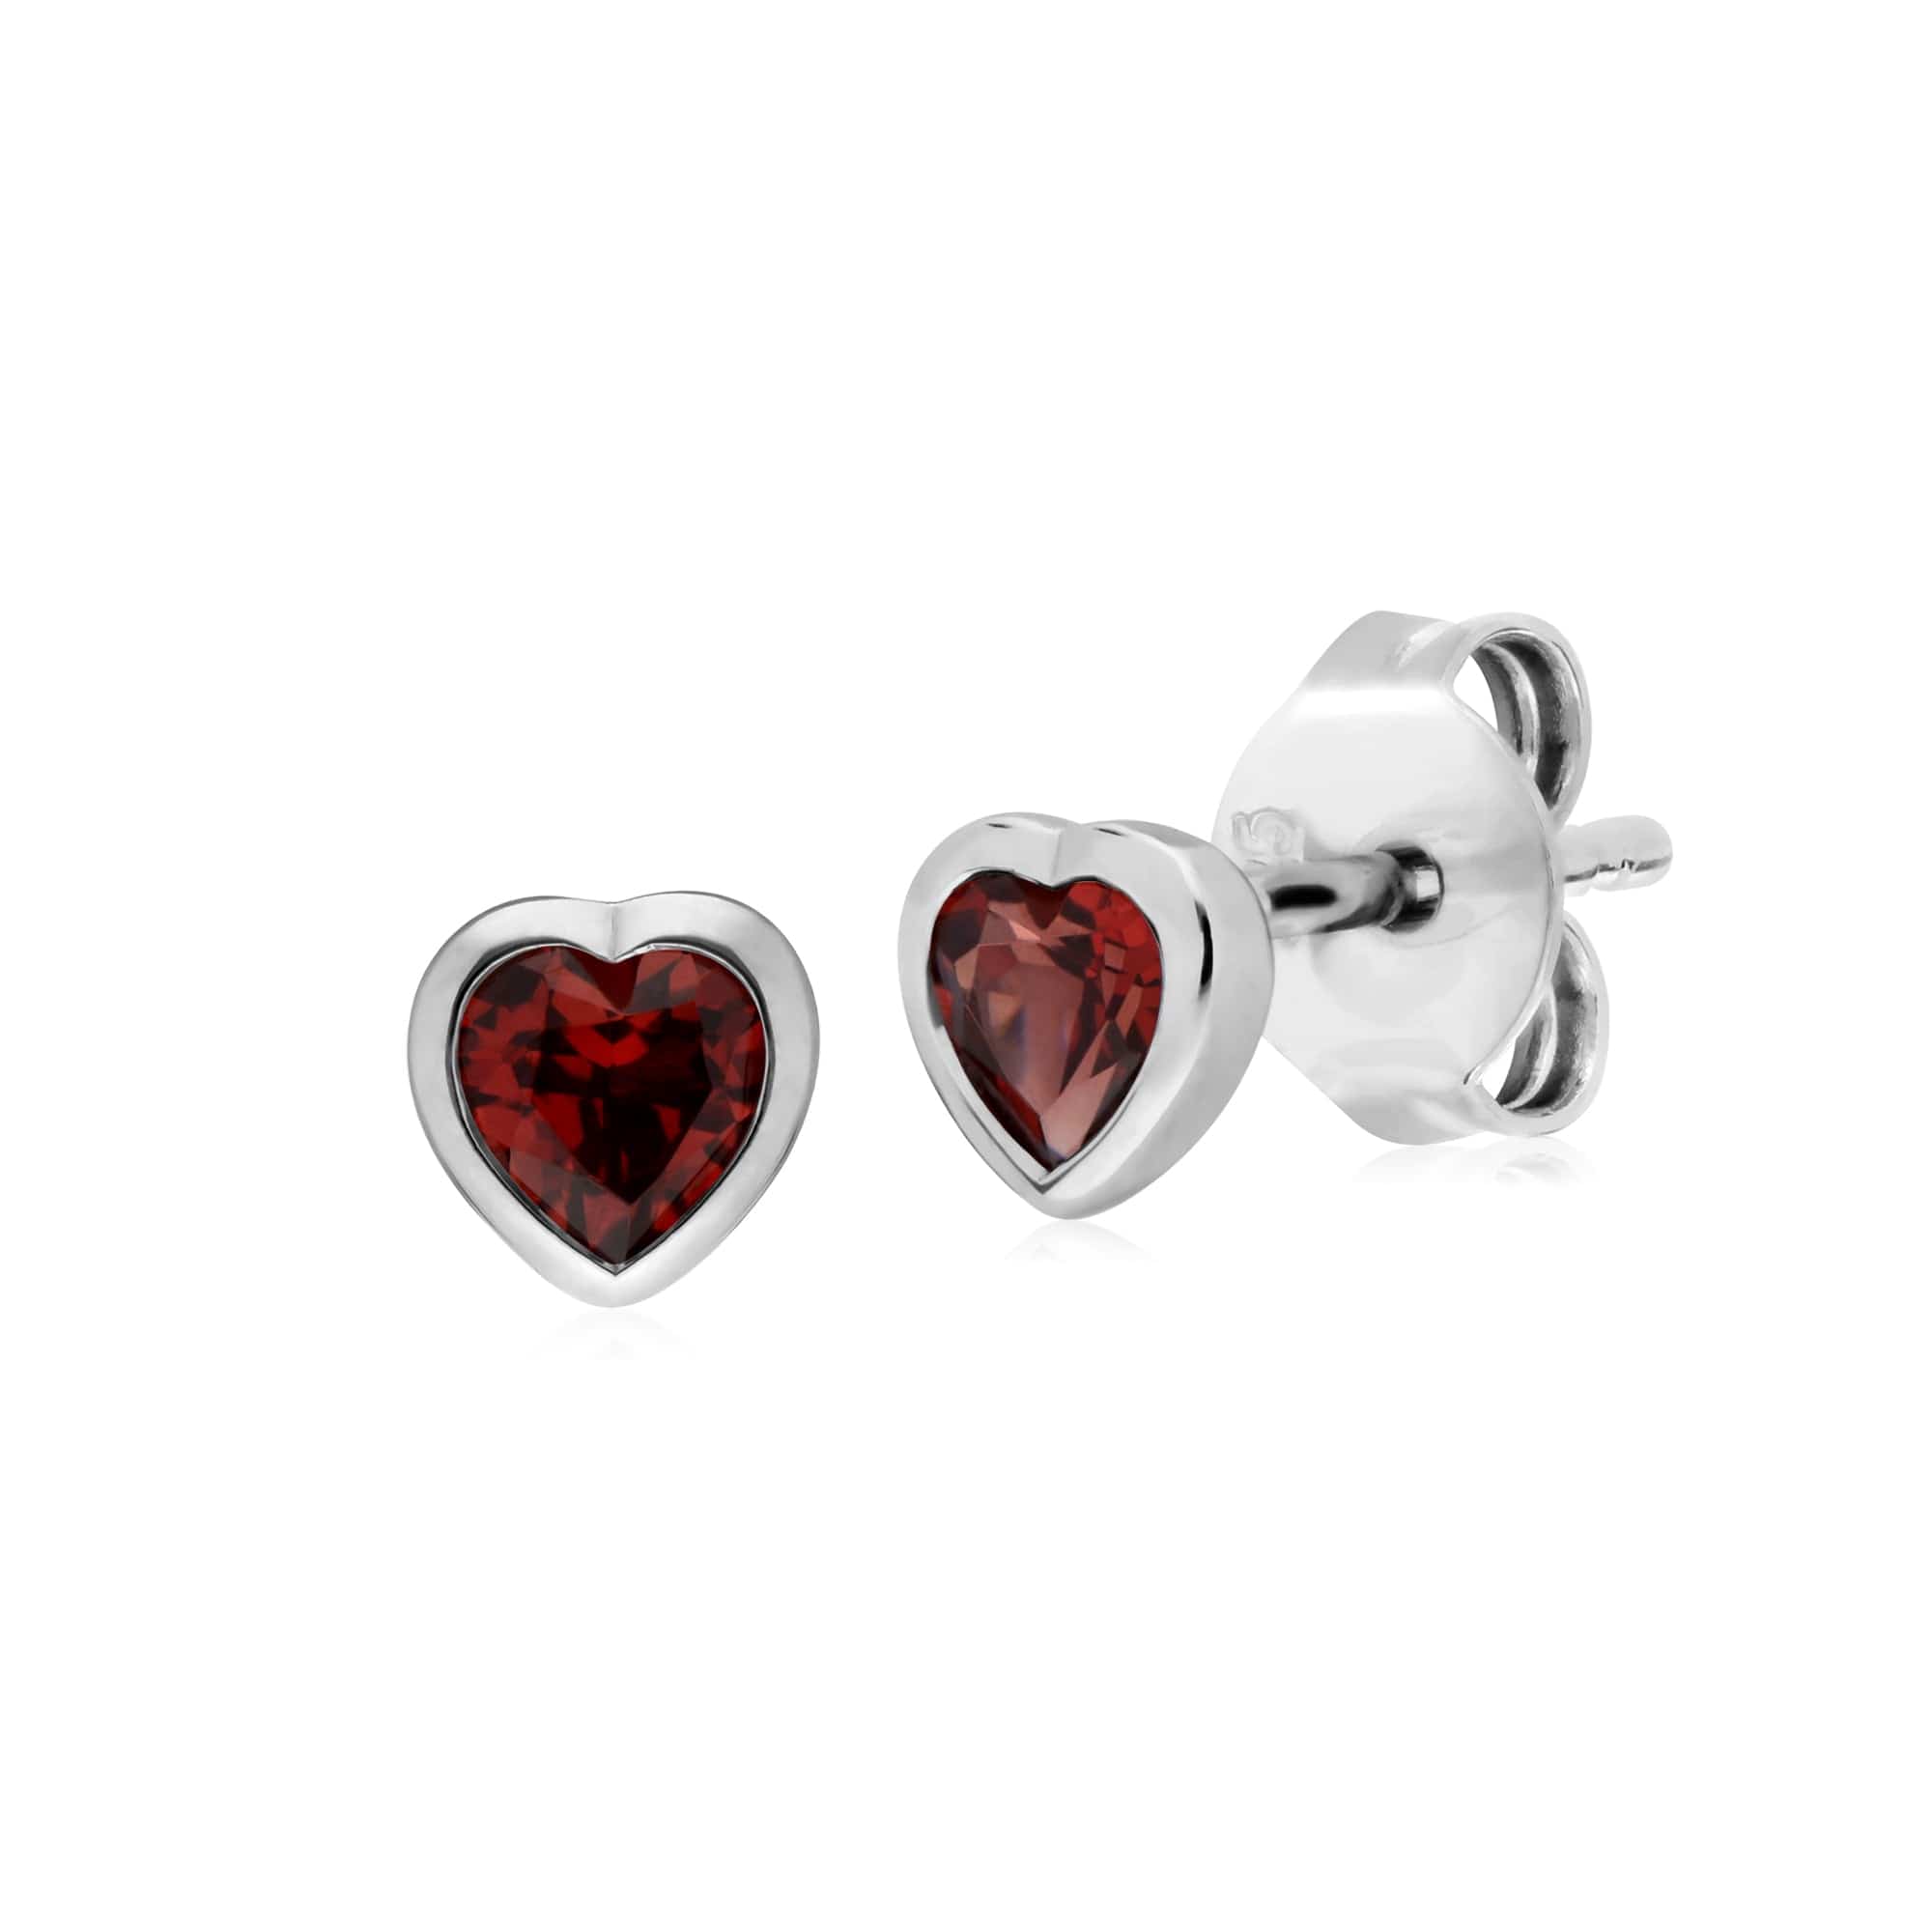 Essential Heart Shaped Garnet Stud Earrings in 925 Sterling Silver 4.5mm - Gemondo